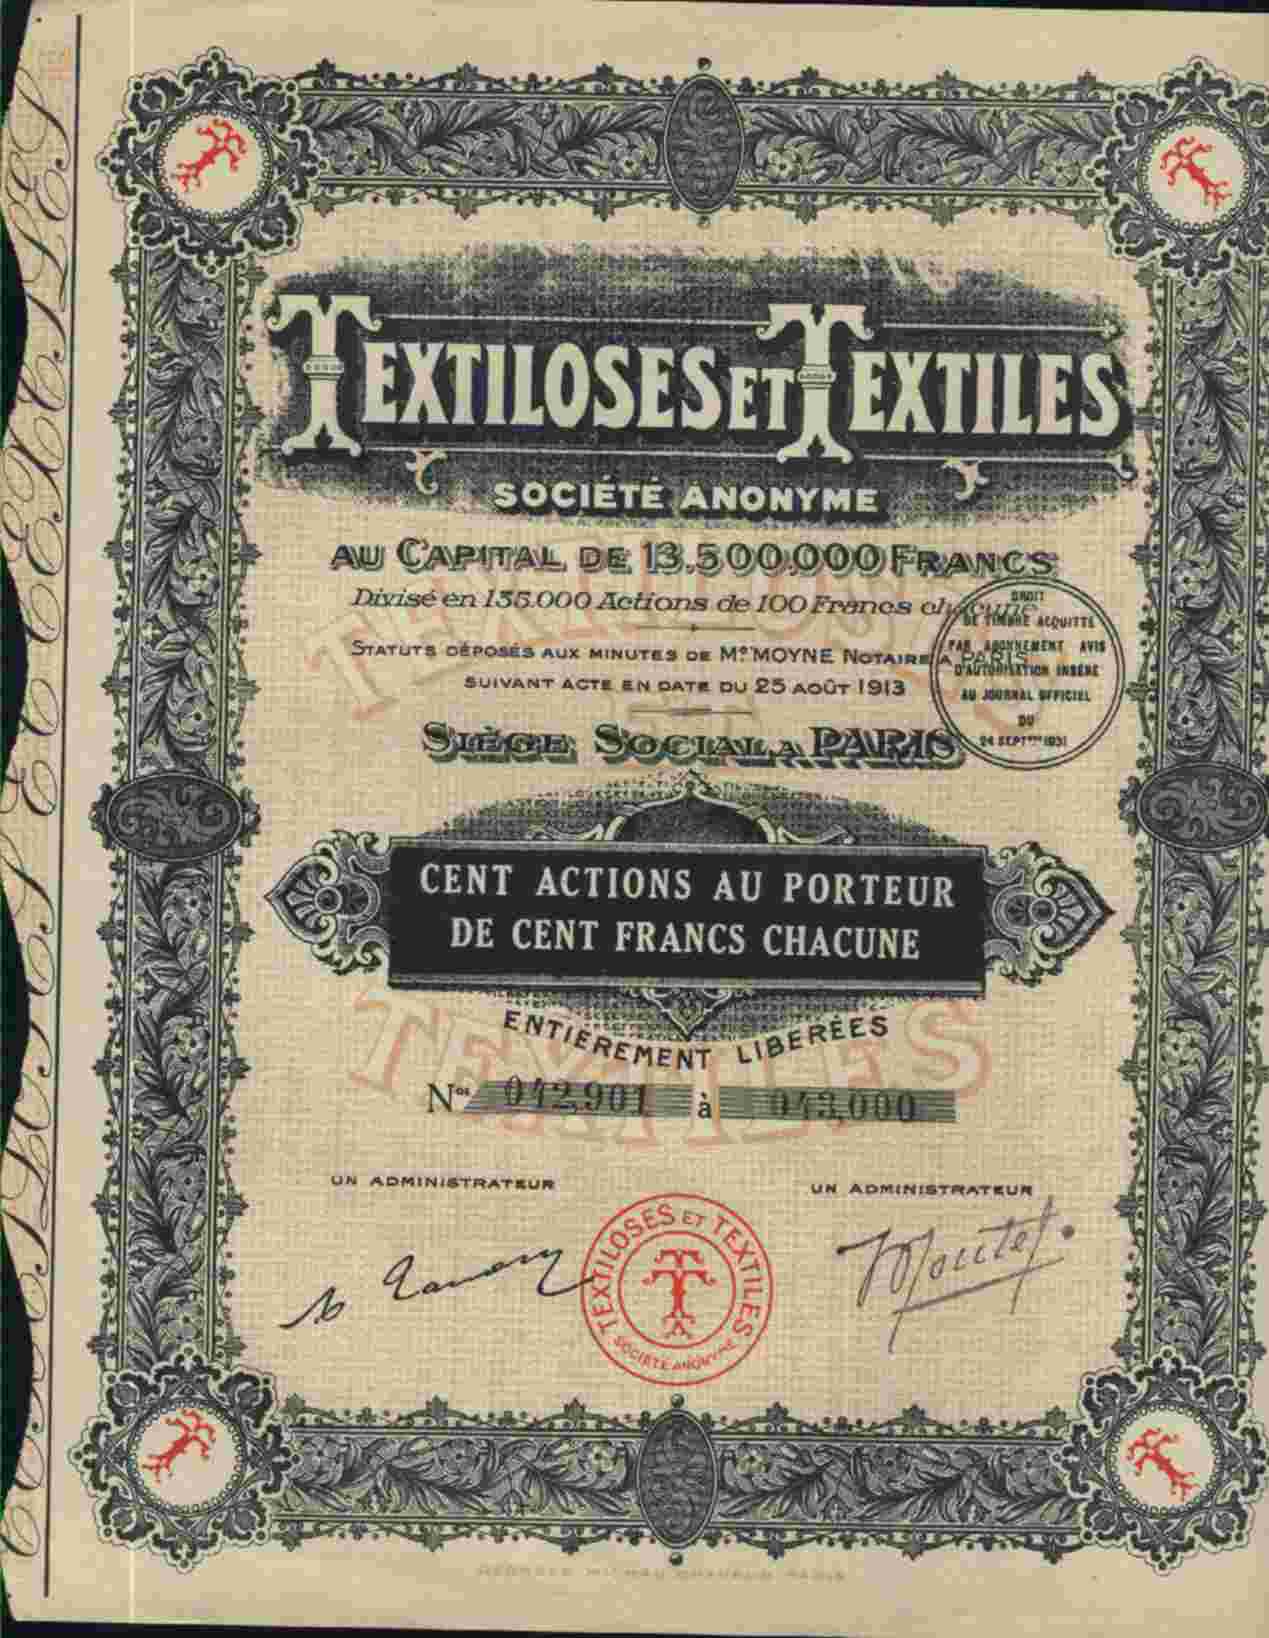 TEXTILOSES ET TEXTILES (100 ACTS) § - Textile